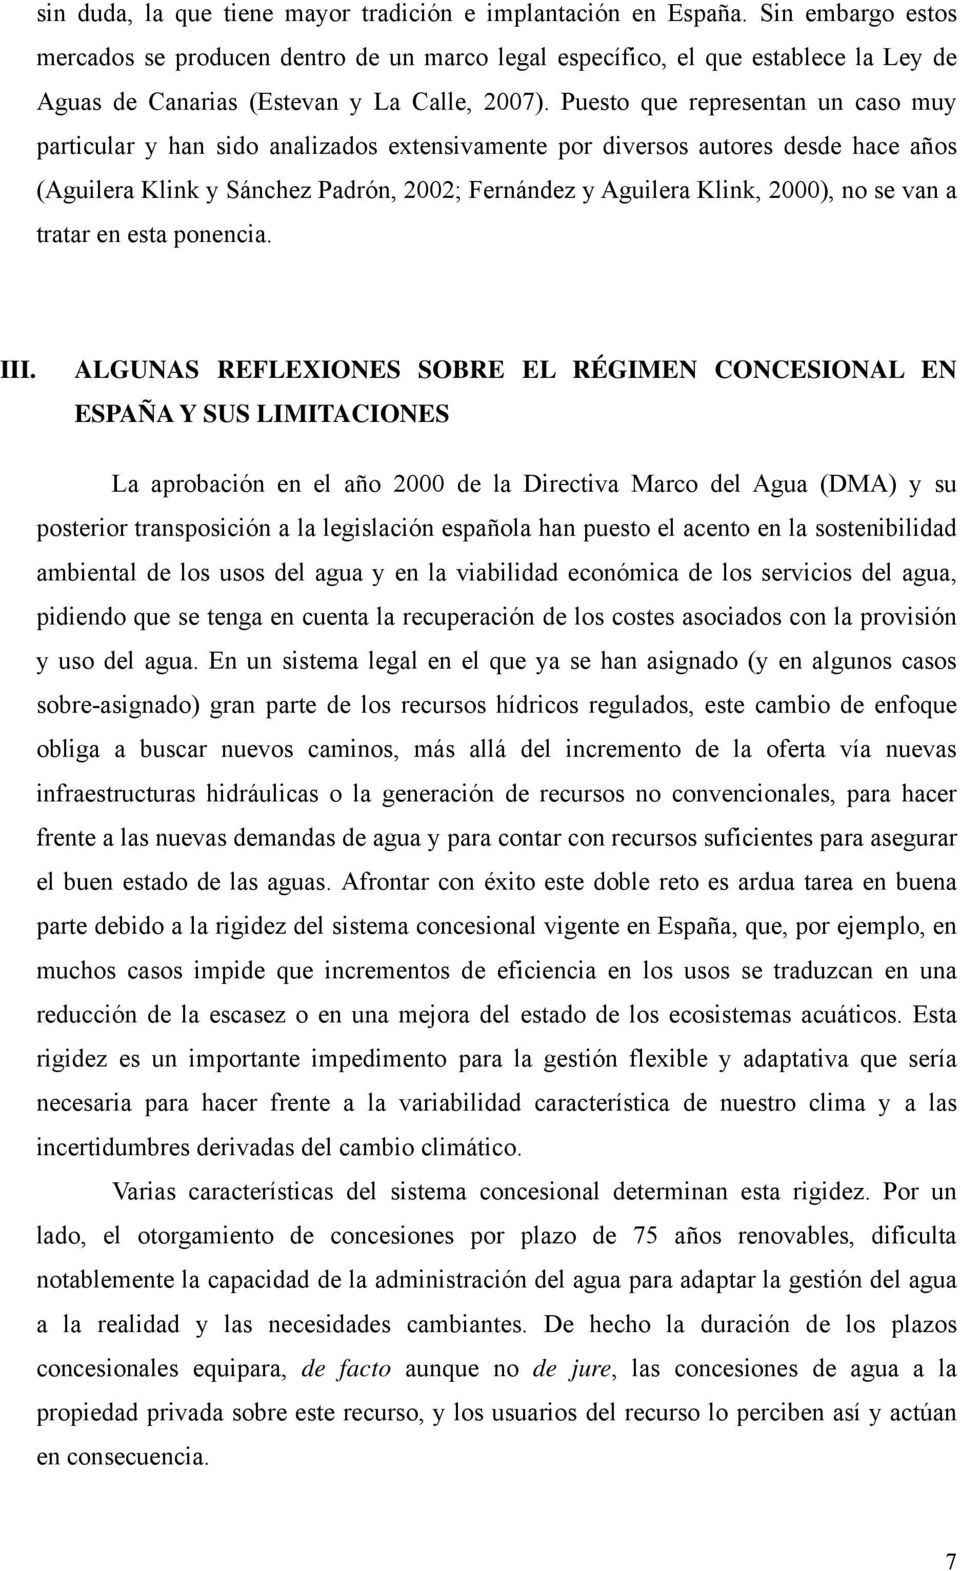 Puesto que representan un caso muy particular y han sido analizados extensivamente por diversos autores desde hace años (Aguilera Klink y Sánchez Padrón, 2002; Fernández y Aguilera Klink, 2000), no